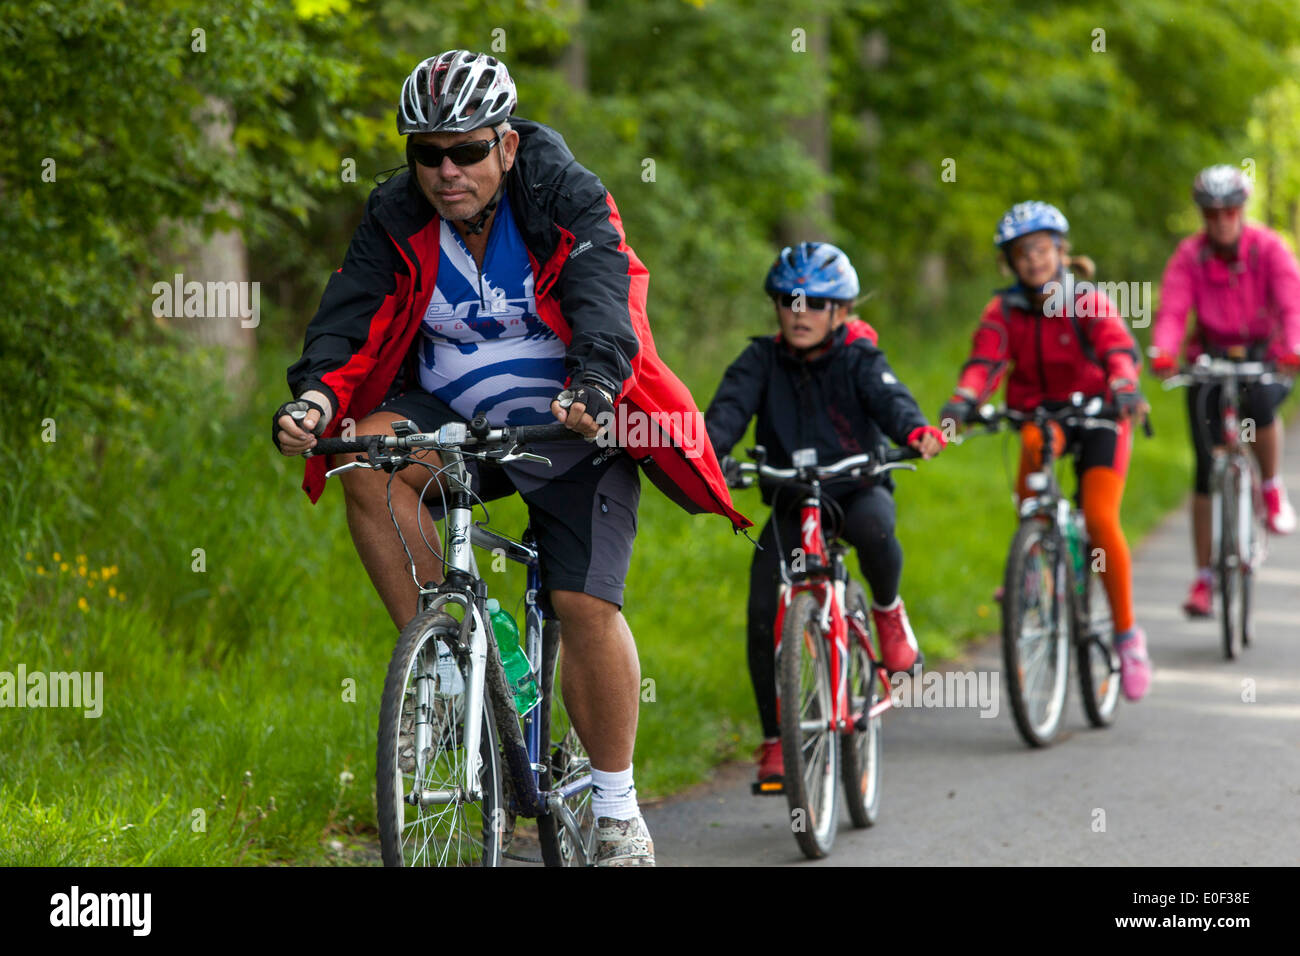 Les gens sur la piste cyclable, les enfants de la piste à bord d'un casque de vélo Banque D'Images